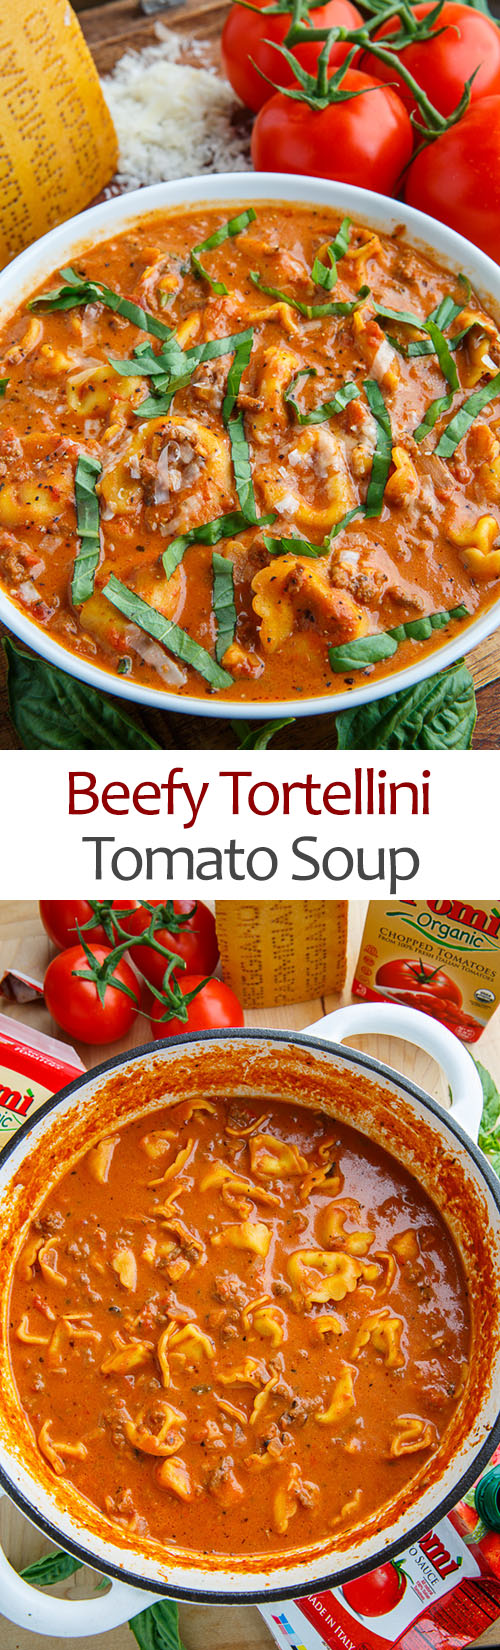 Beefy Tortellini Tomato Soup